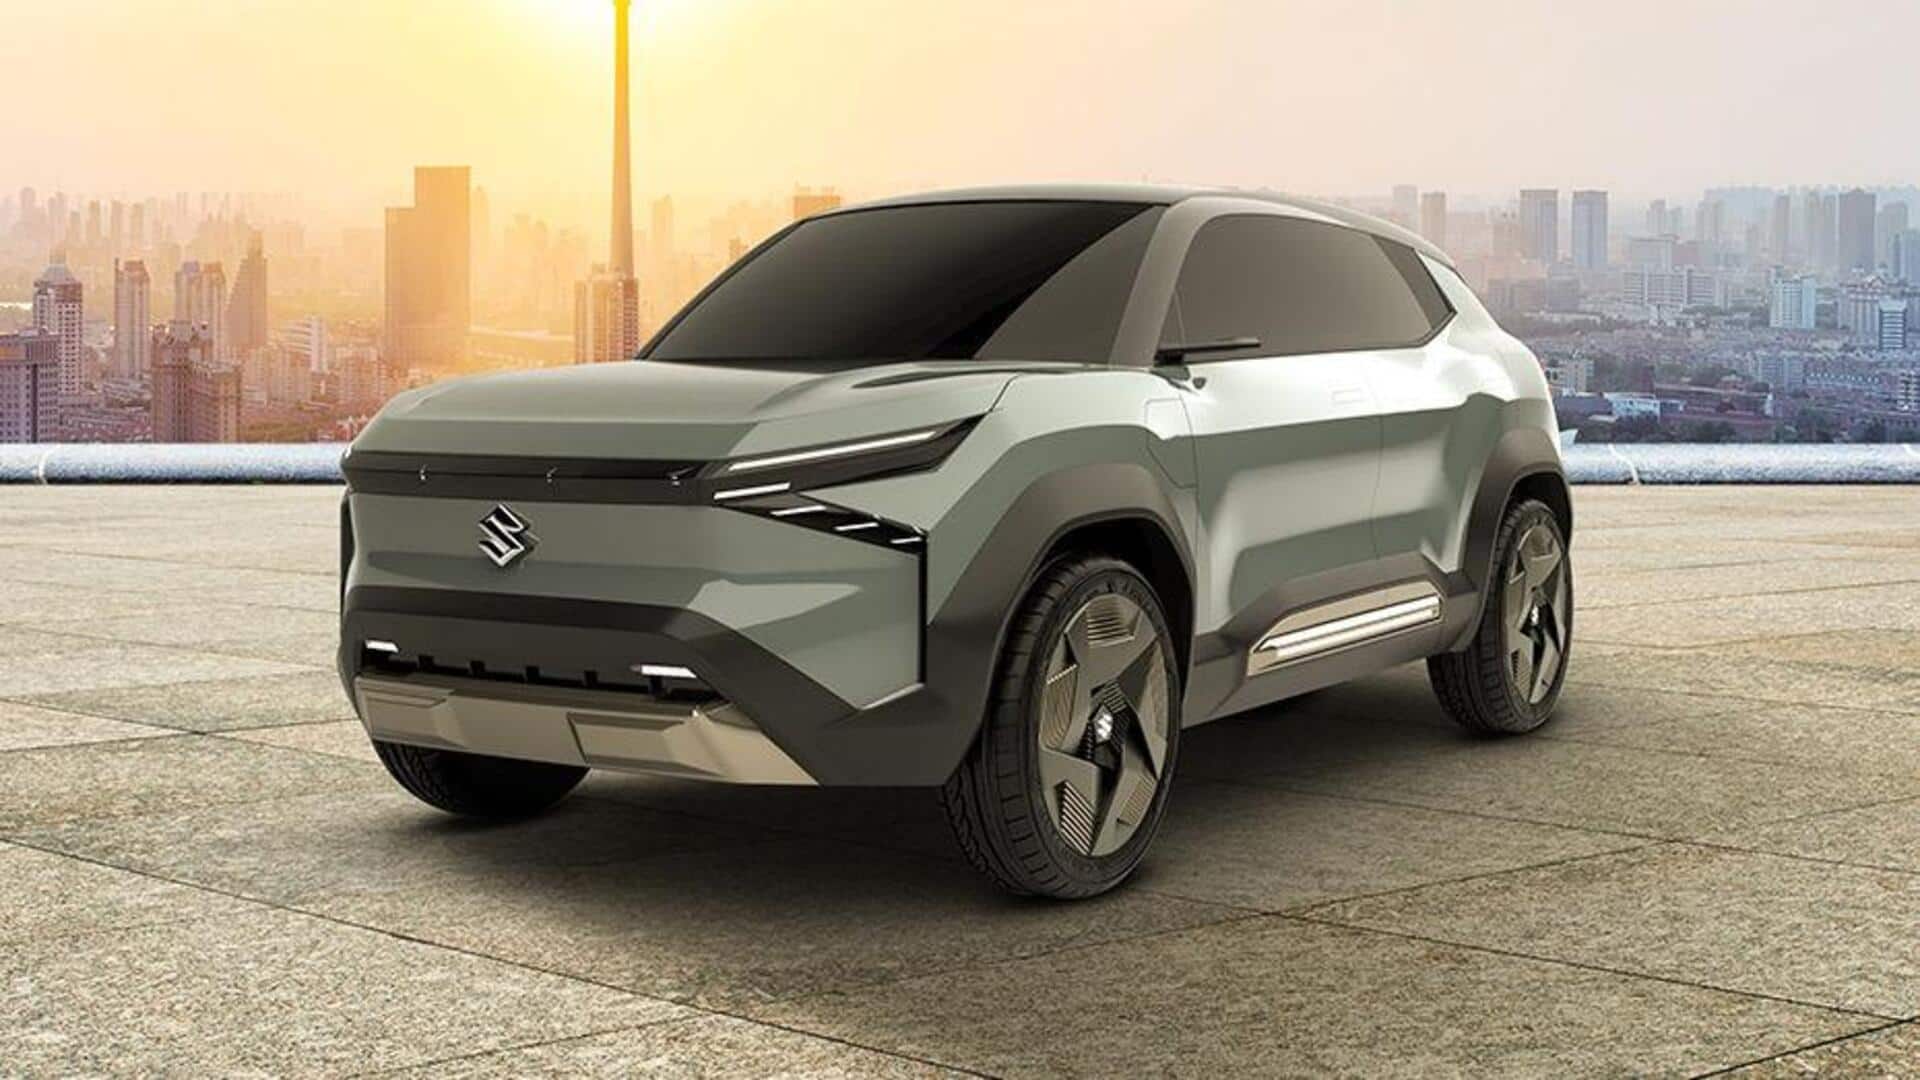 Maruti Suzuki to launch eVX electric SUV in 2025